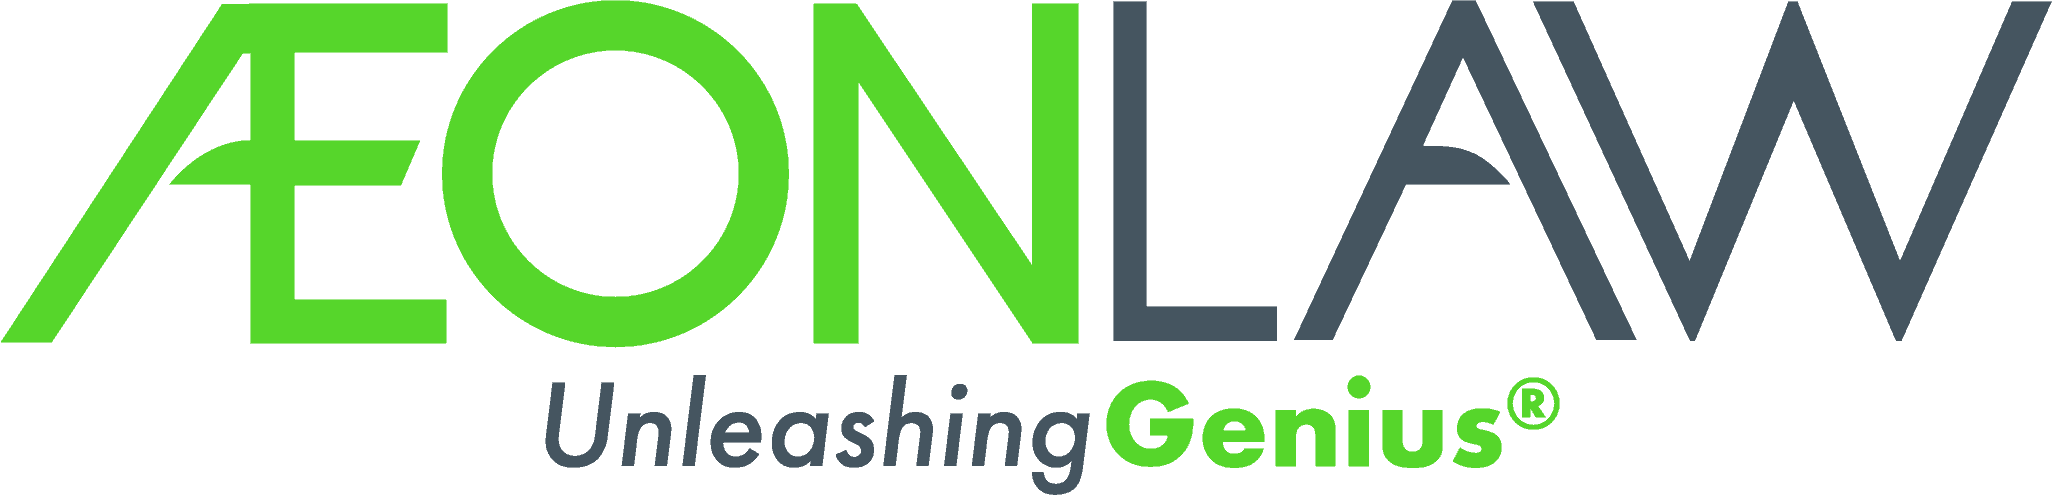 AEON Law logo full color transparent